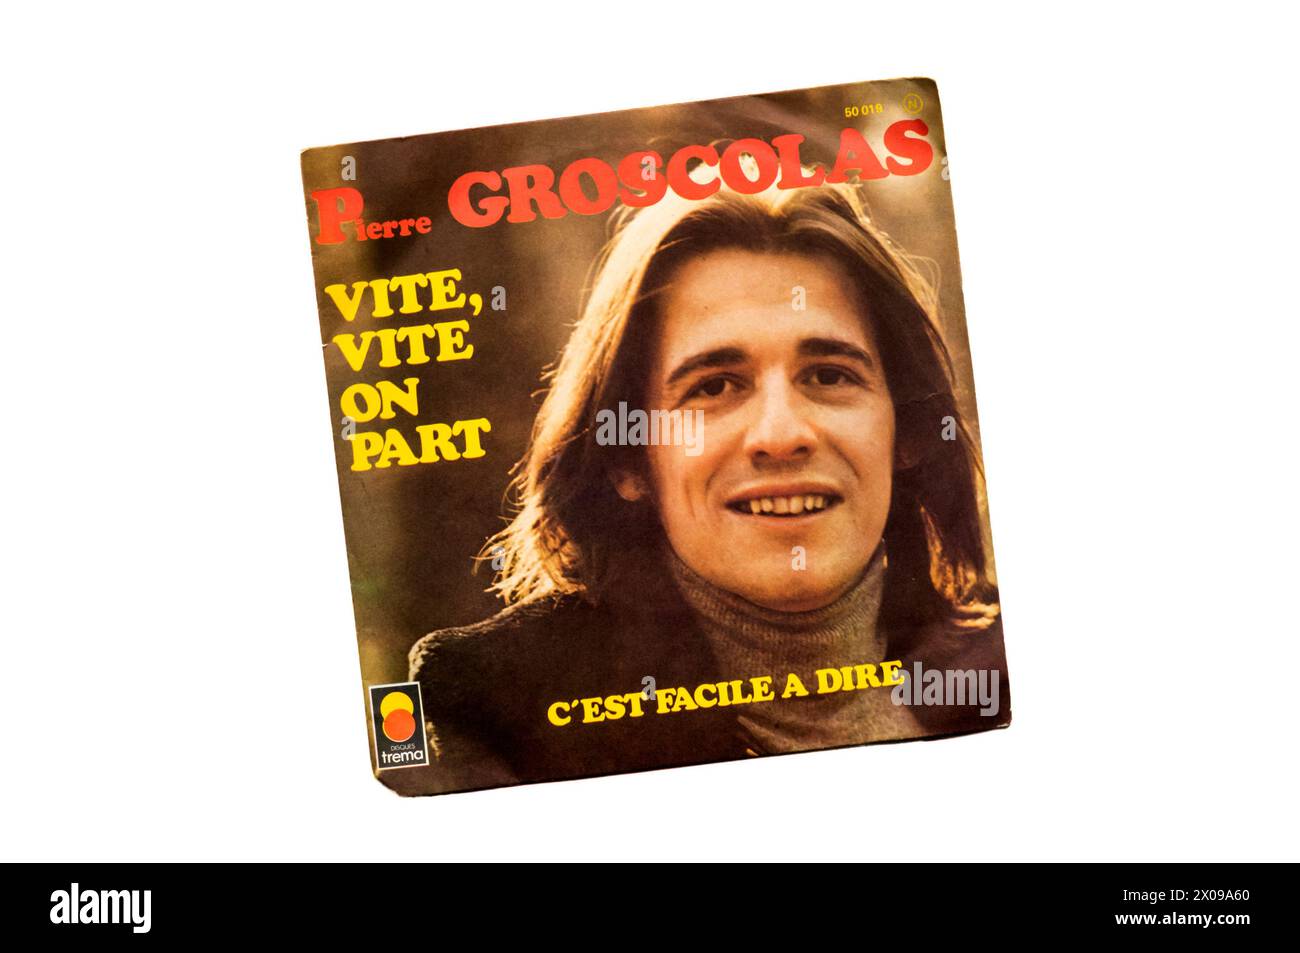 Un singolo da 7' di vite,vite on Part e c'est facile a dire di Pierre Groscolas. Rilasciato nel 1974. Foto Stock